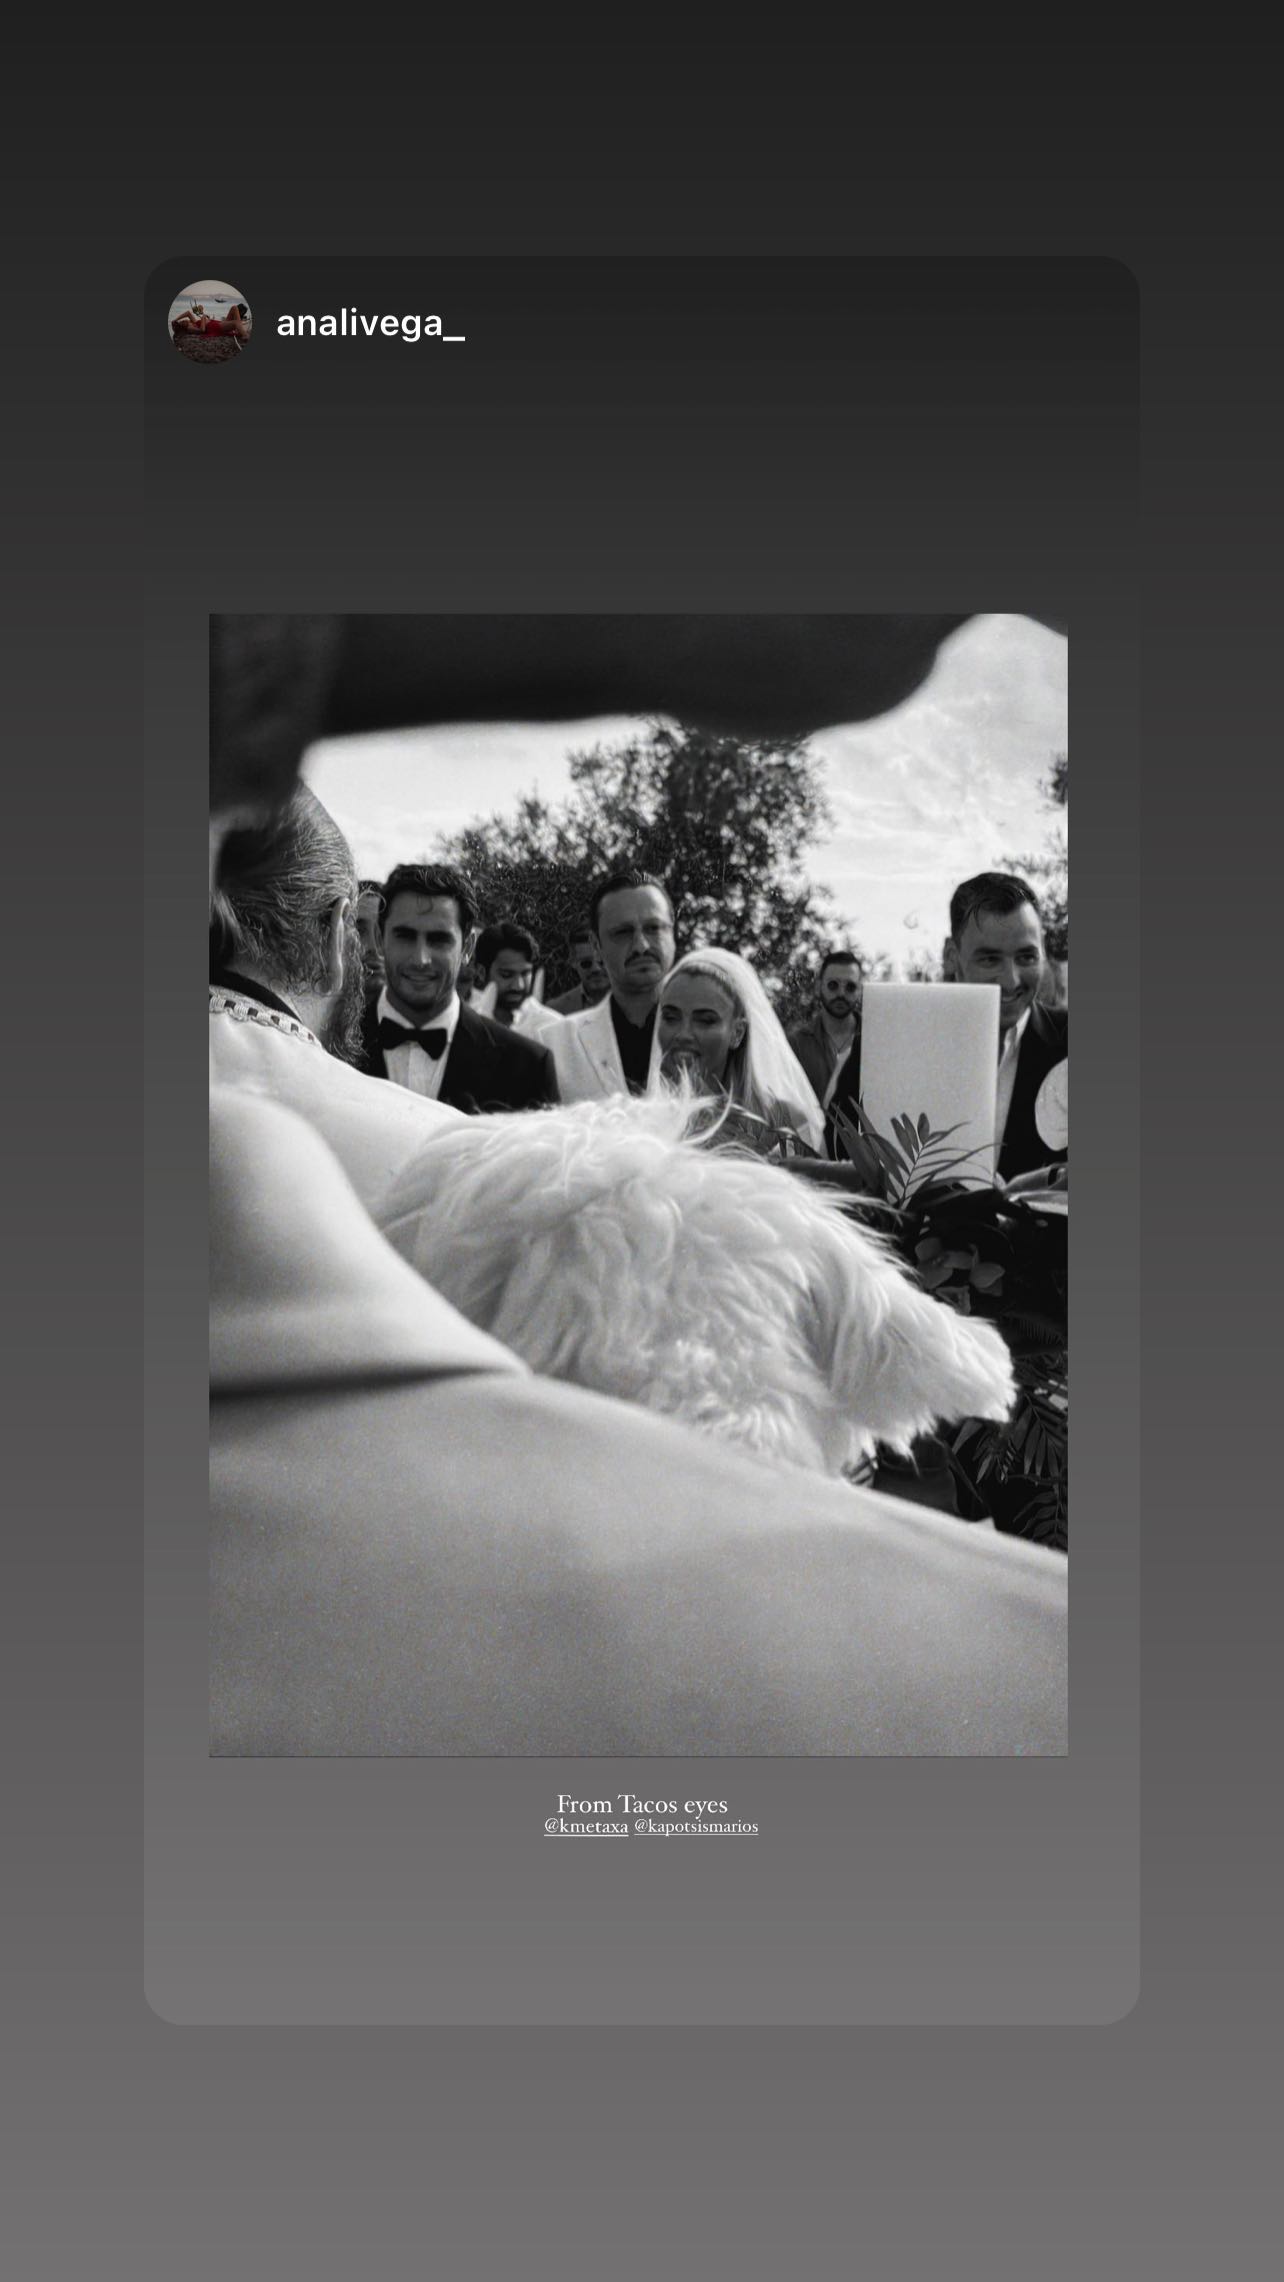 Κόνι Μεταξά-Μάριος Καπότσης: Το φωτογραφικό άλμπουμ του γάμου τους και τα τέσσερα νυφικά